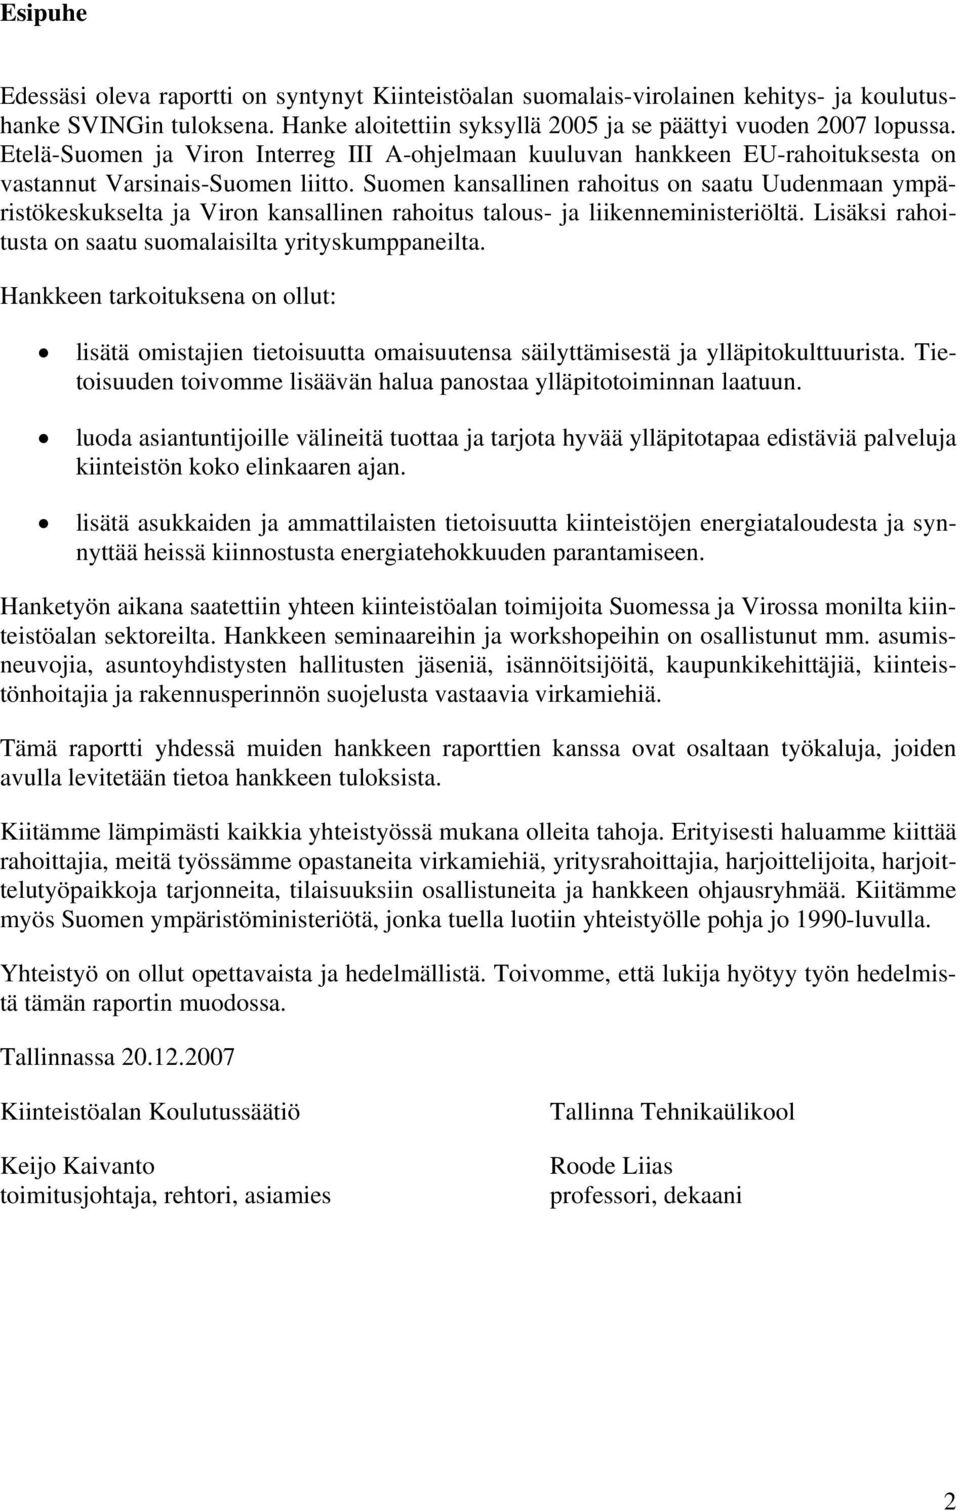 Suomen kansallinen rahoitus on saatu Uudenmaan ympäristökeskukselta ja Viron kansallinen rahoitus talous- ja liikenneministeriöltä. Lisäksi rahoitusta on saatu suomalaisilta yrityskumppaneilta.